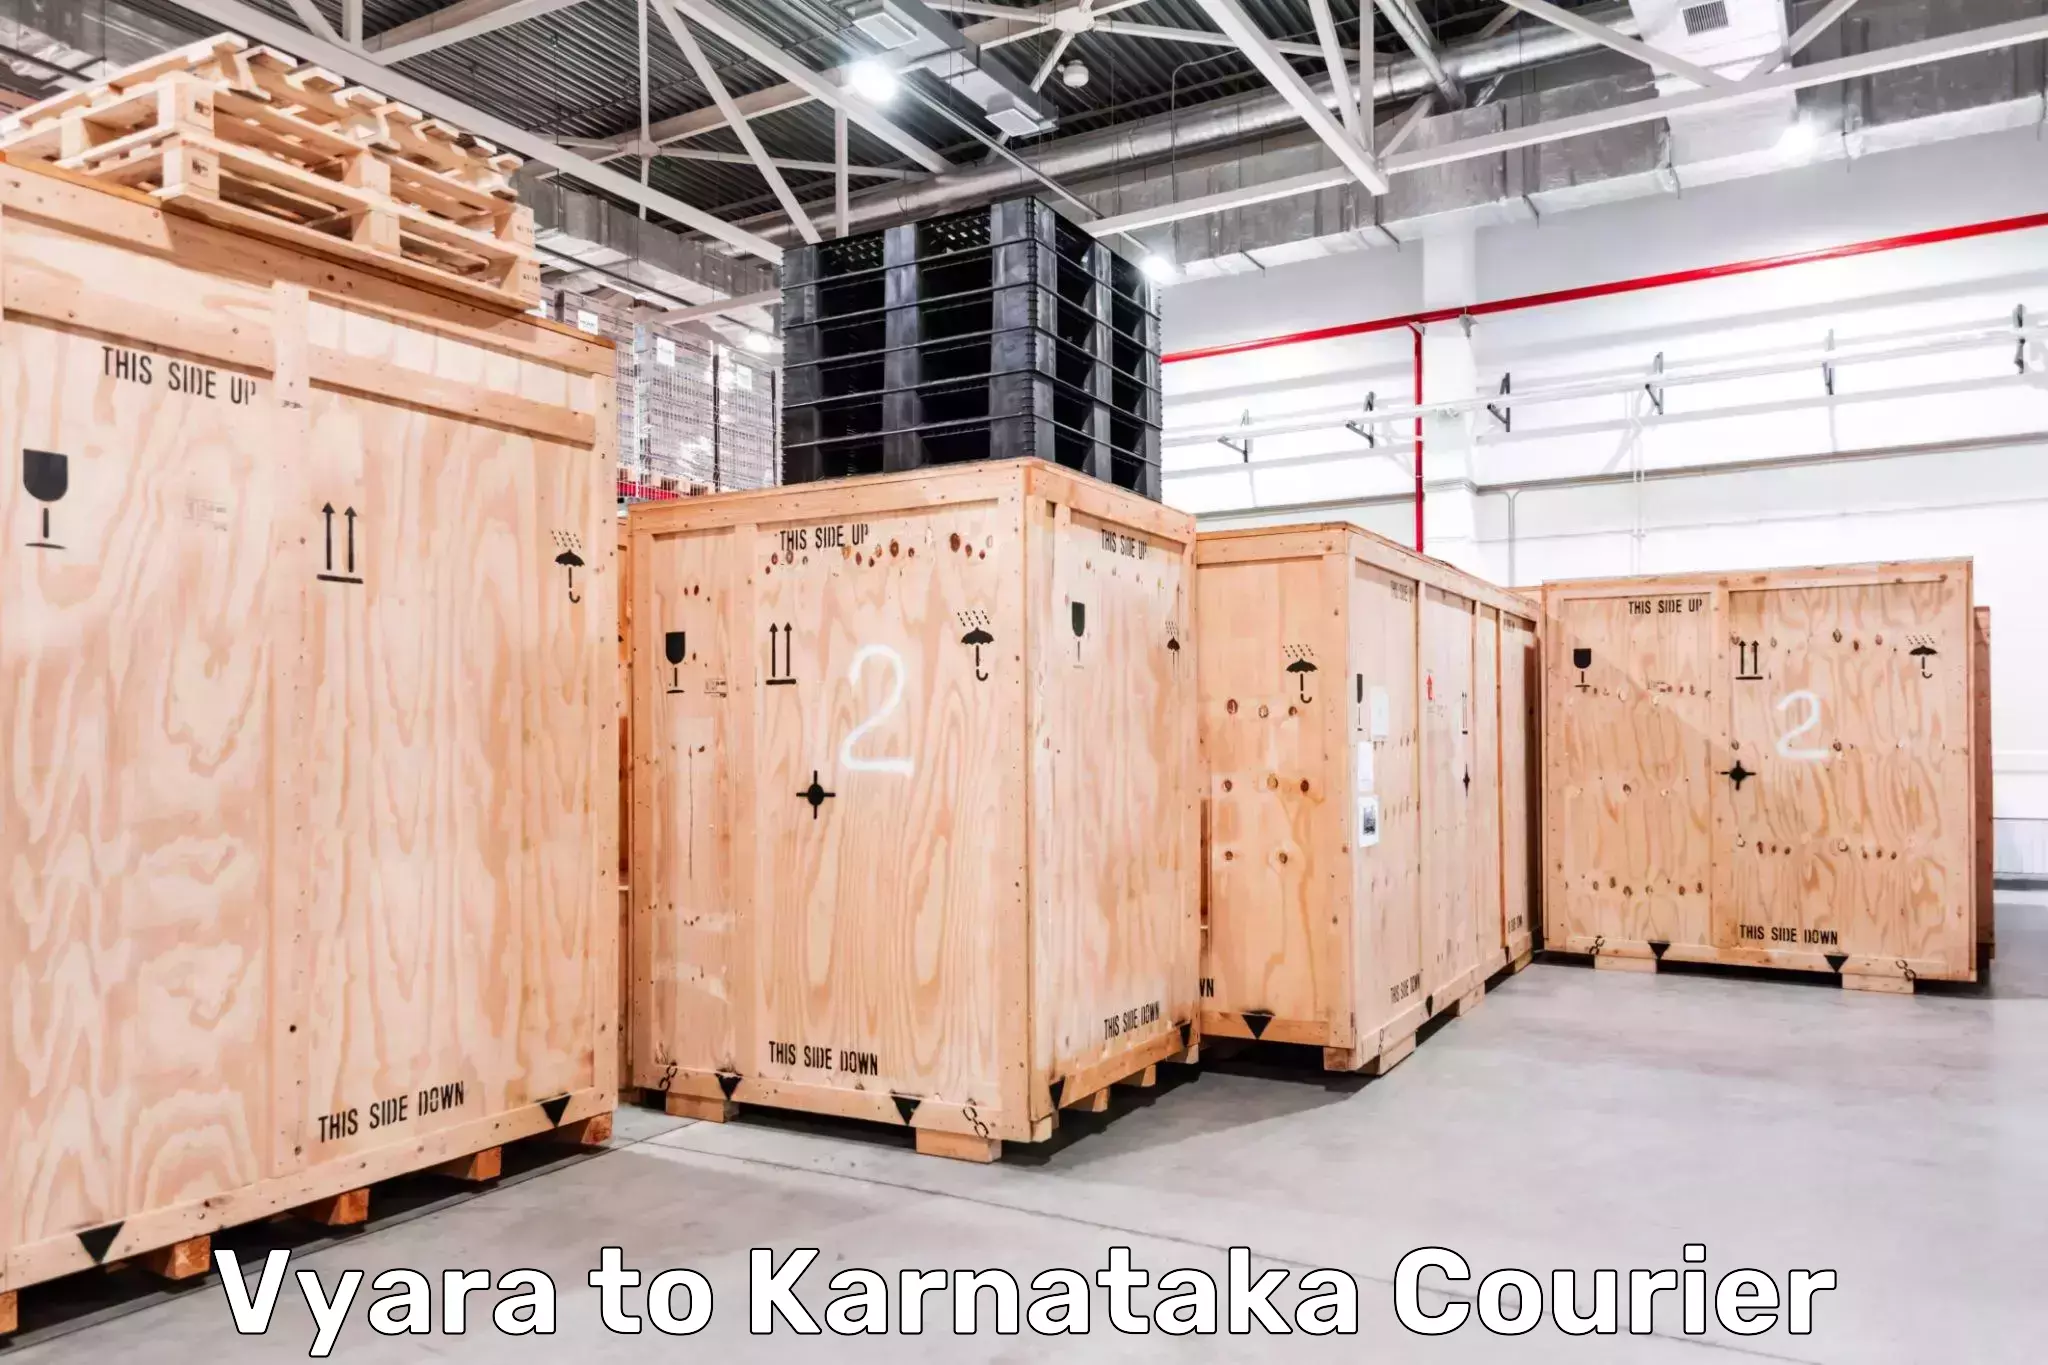 Individual parcel service Vyara to Karnataka